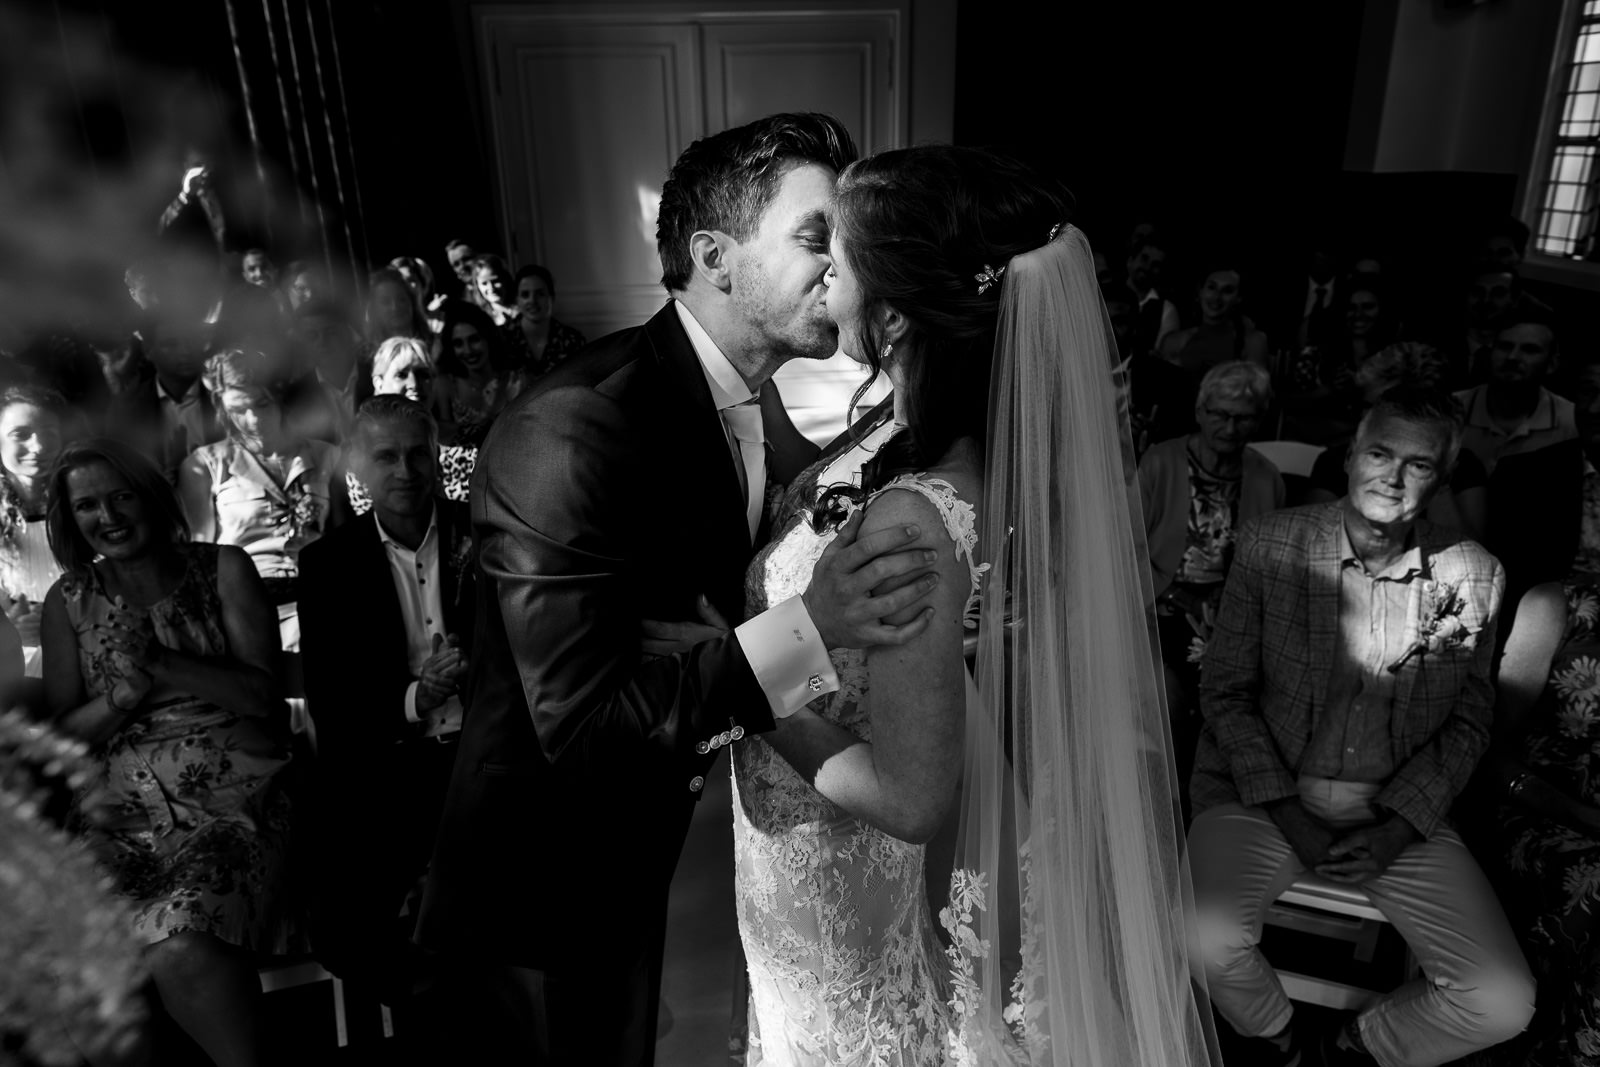 Trouwfotograaf Amsterdam eerste kus trouw ceremonie bruidspaar bij wester villa